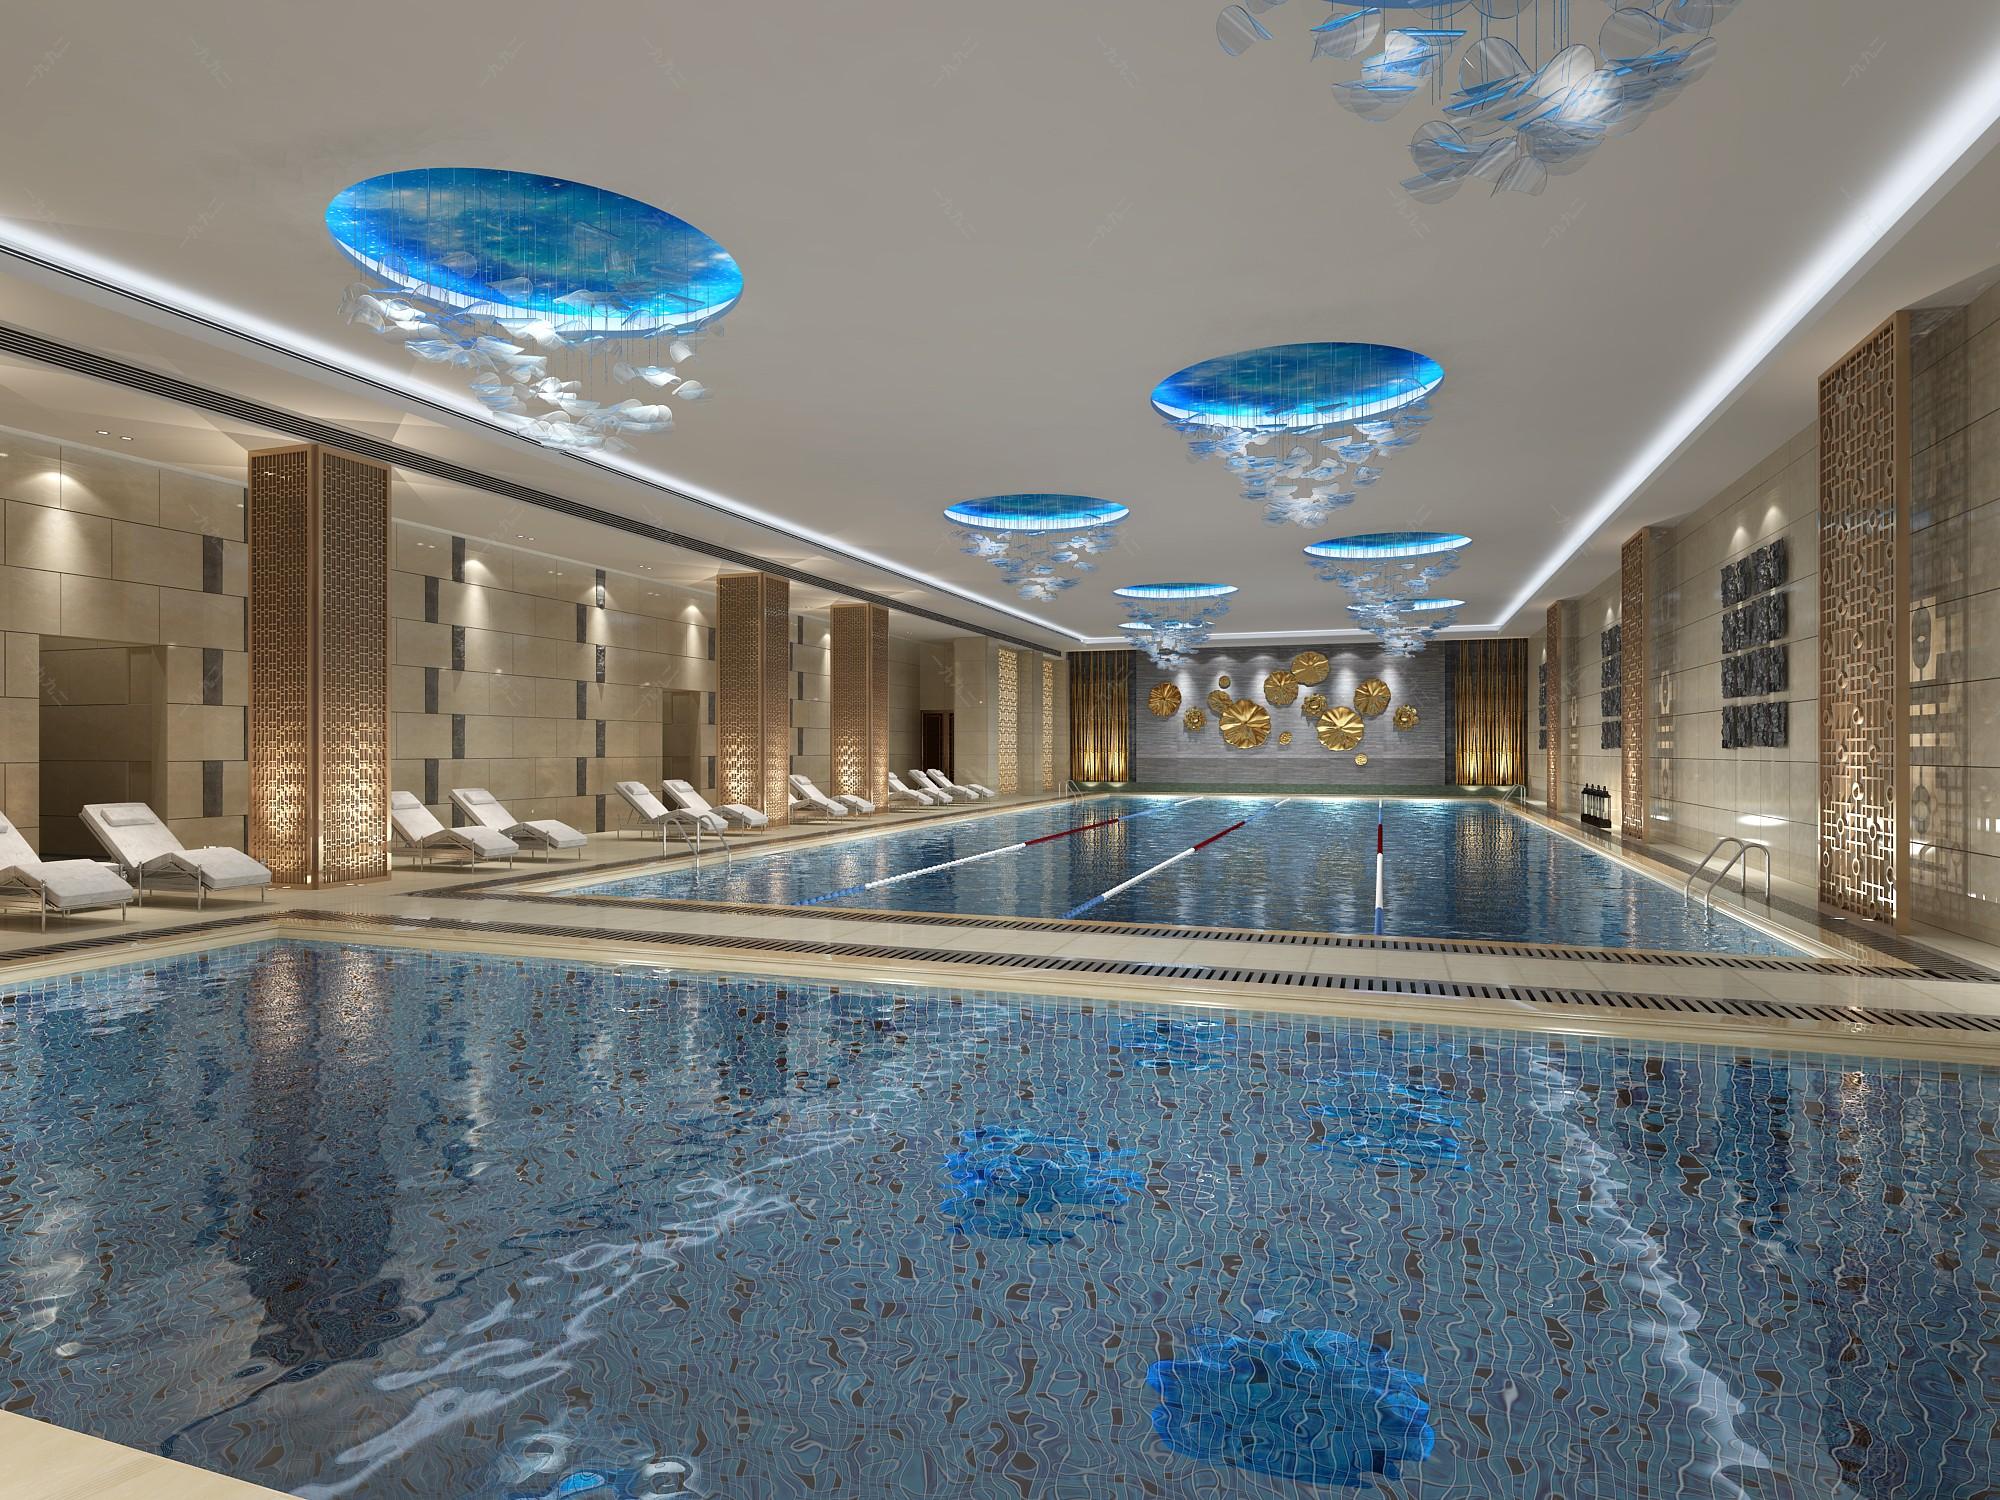 游泳馆案例-北京华兴盛世建筑装饰工程有限公司